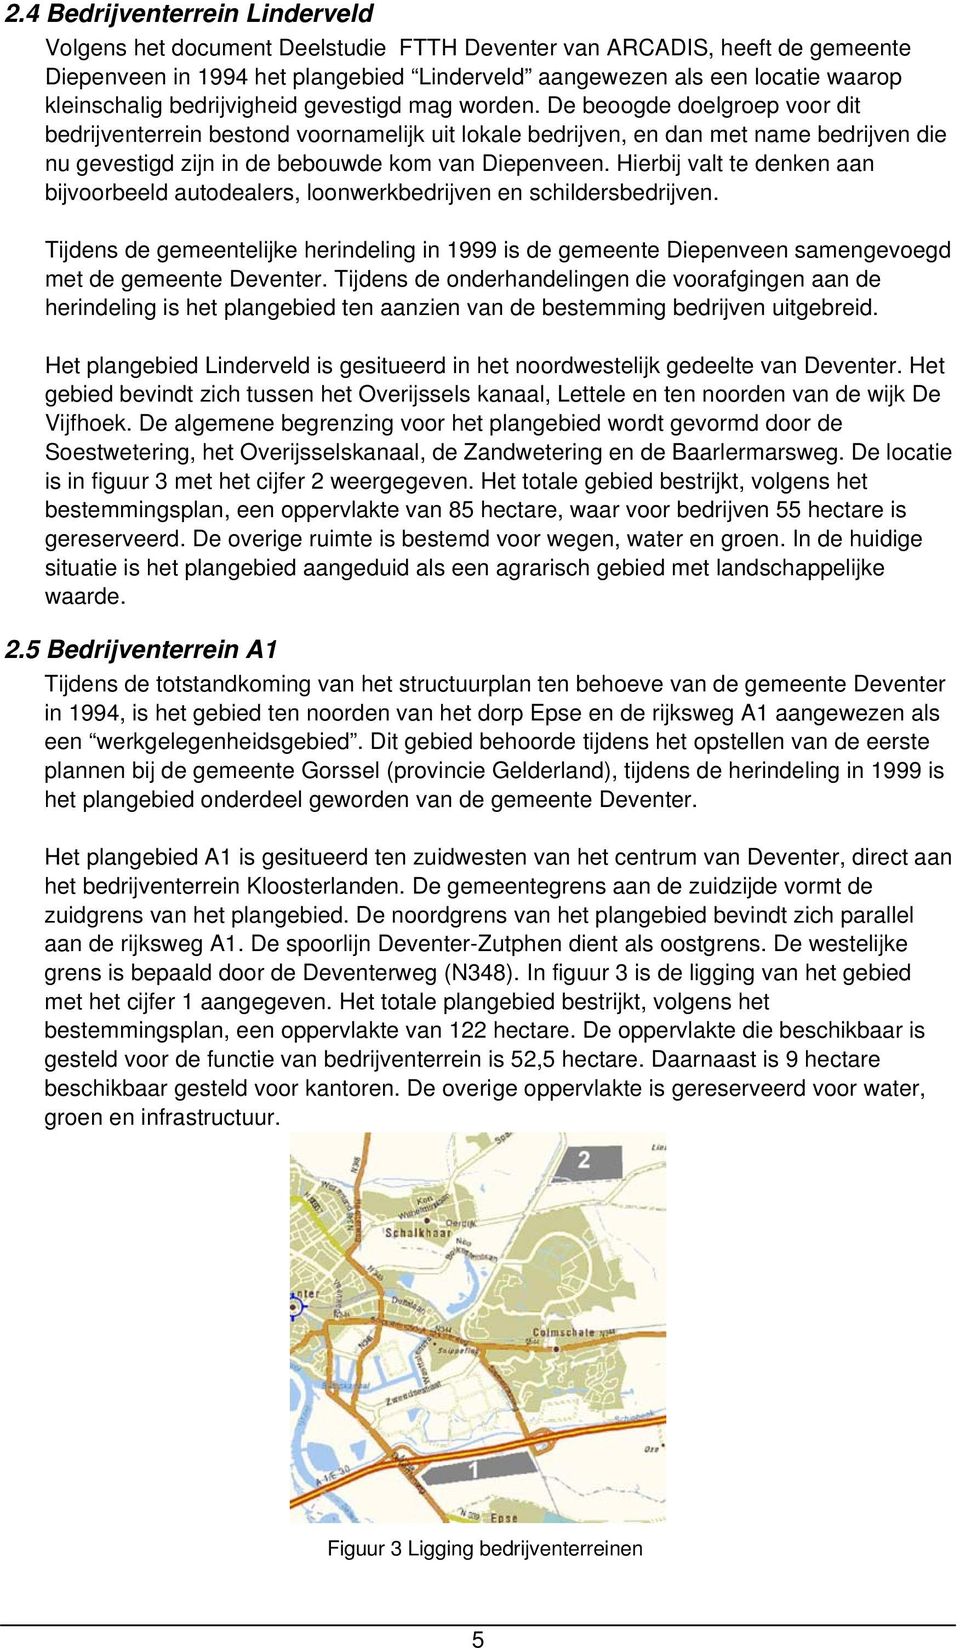 De beoogde doelgroep voor dit bedrijventerrein bestond voornamelijk uit lokale bedrijven, en dan met name bedrijven die nu gevestigd zijn in de bebouwde kom van Diepenveen.